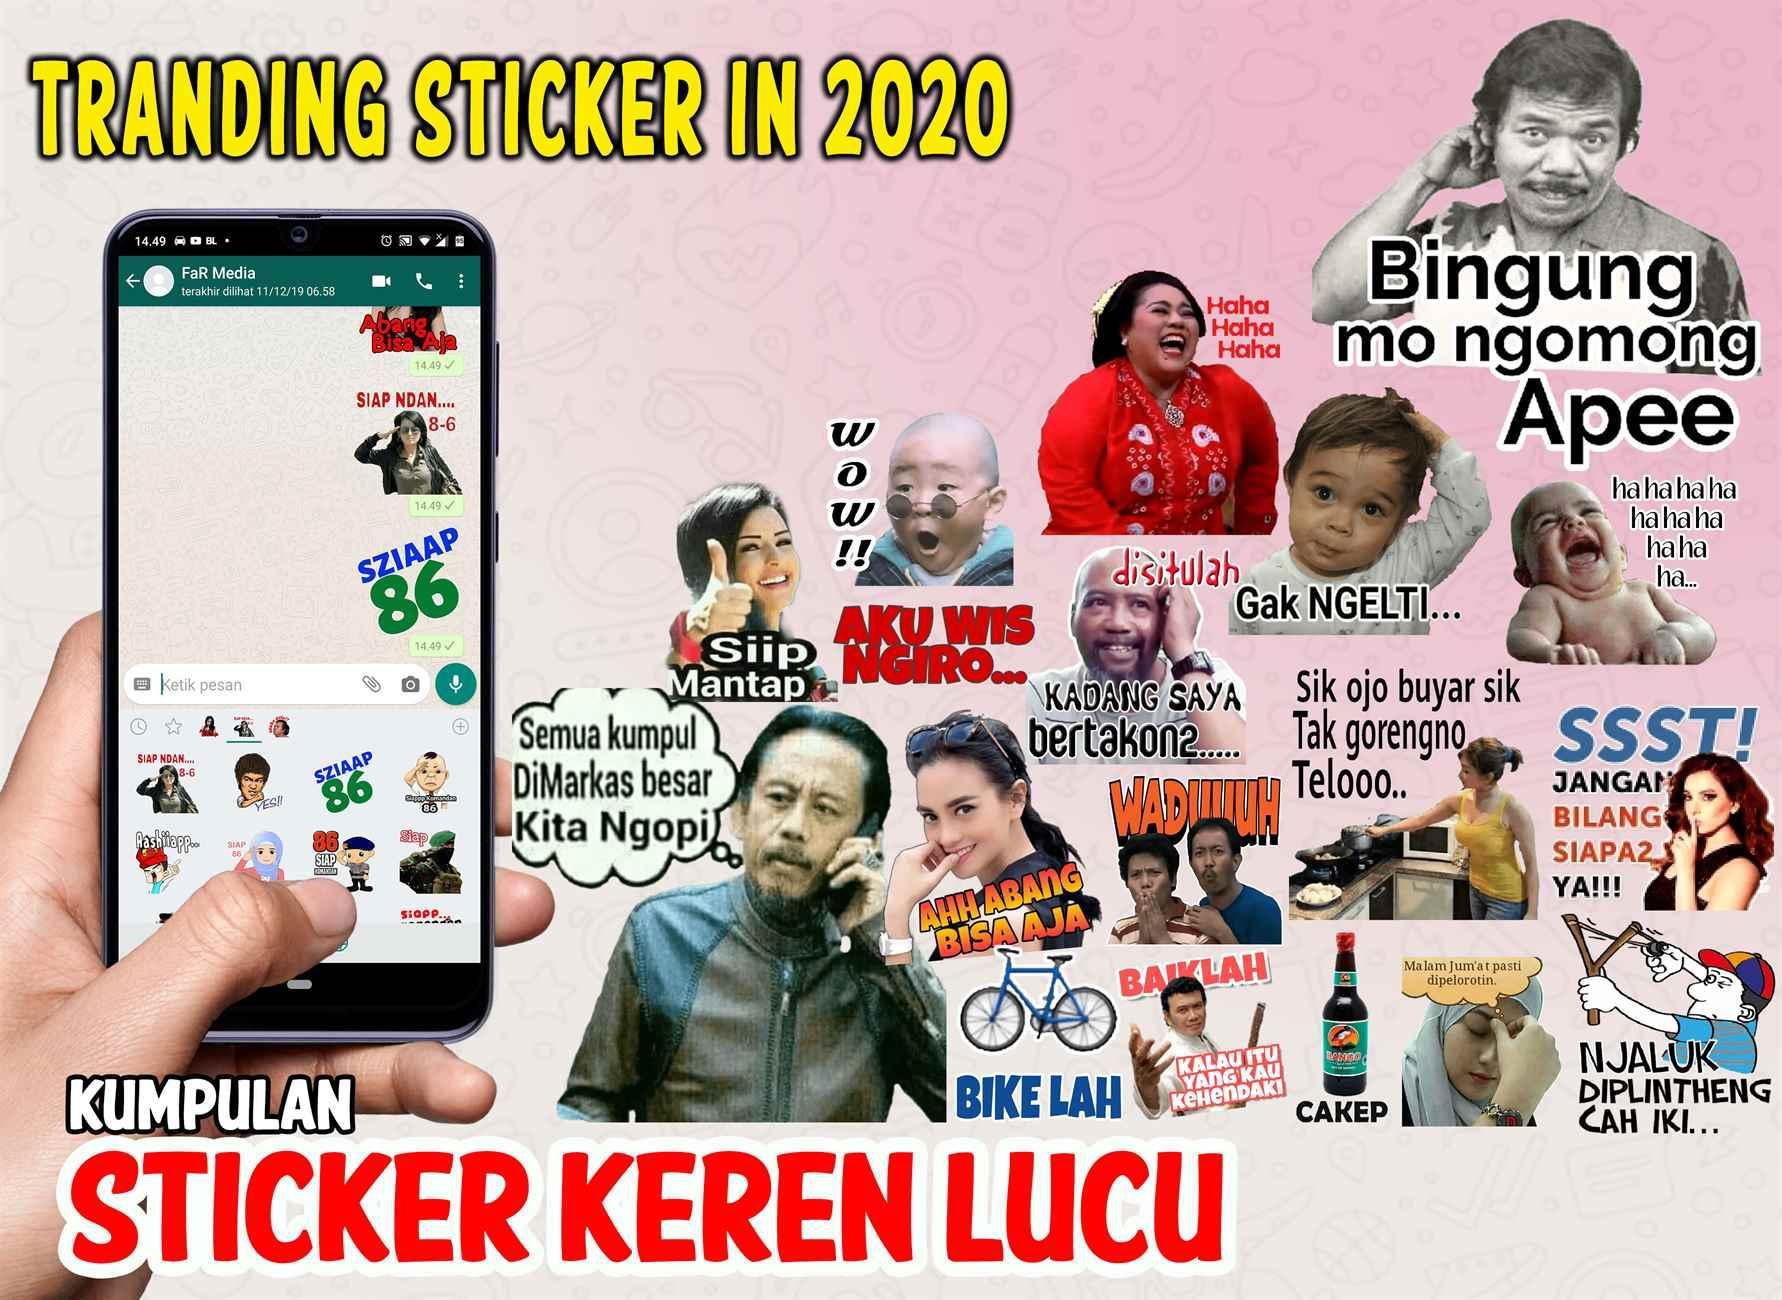 Kumpulan Sticker Keren Lucu Wastickerapps Whatsapp For Android